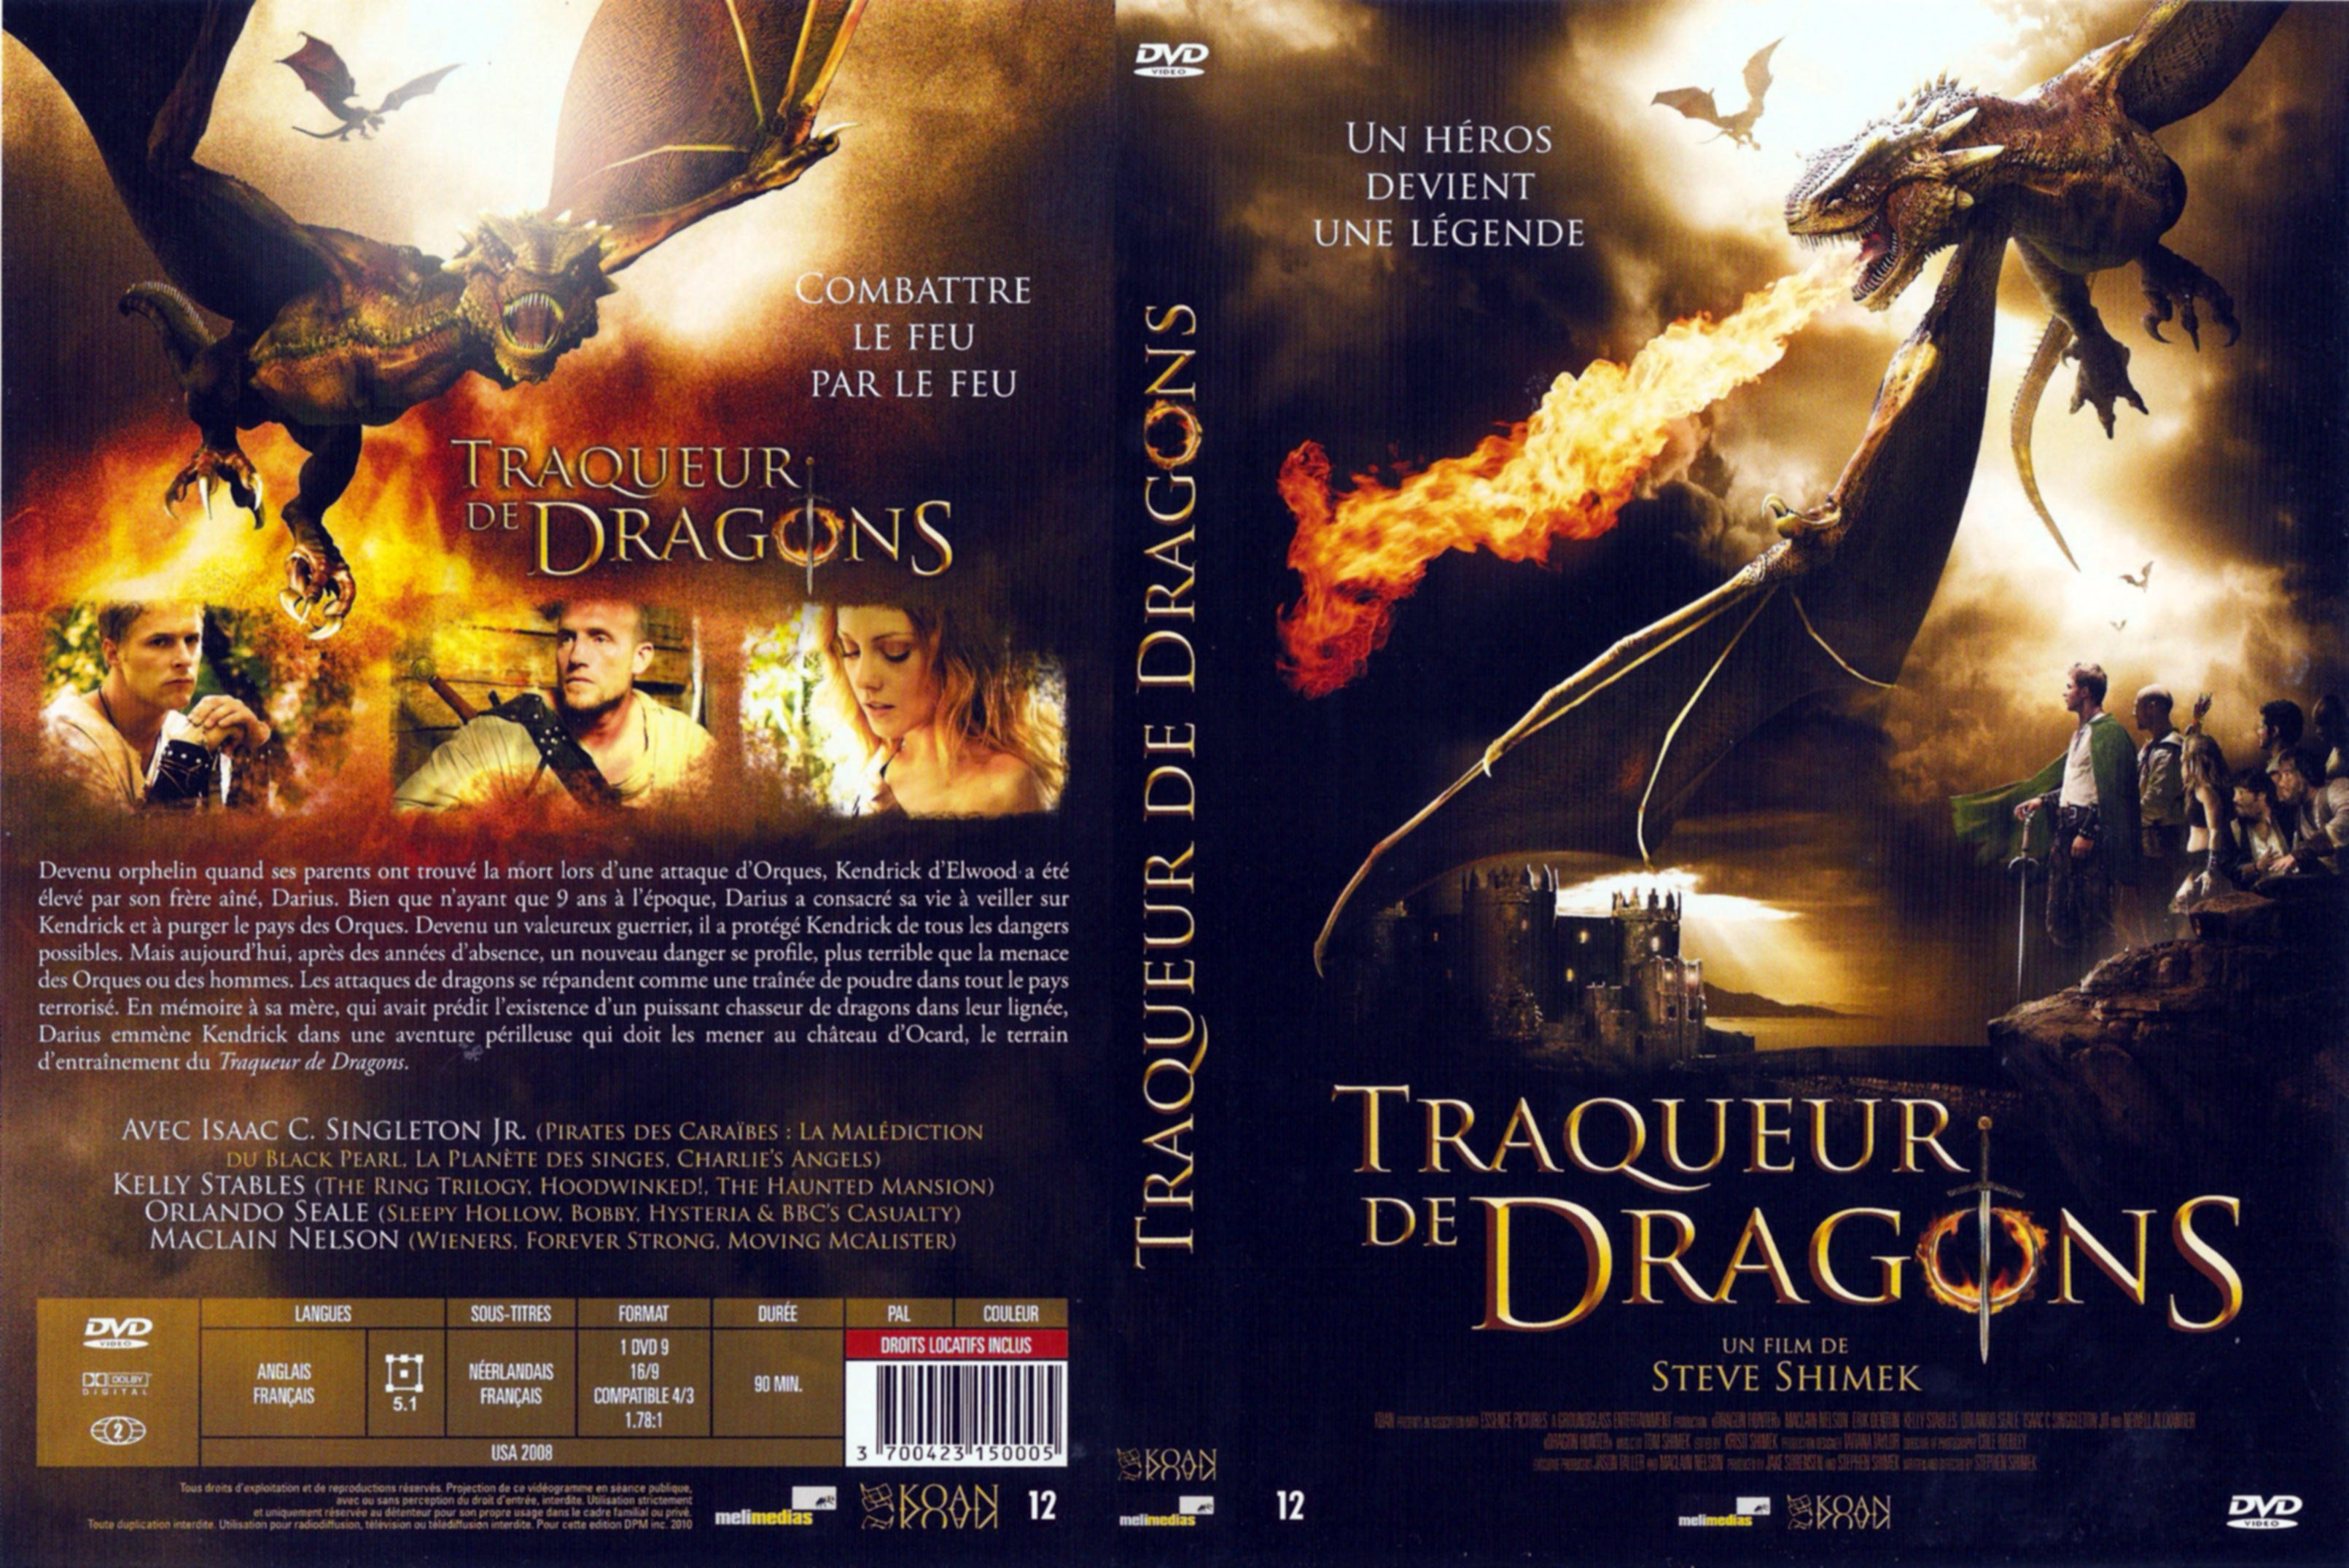 Jaquette DVD Traqueur de Dragons v2